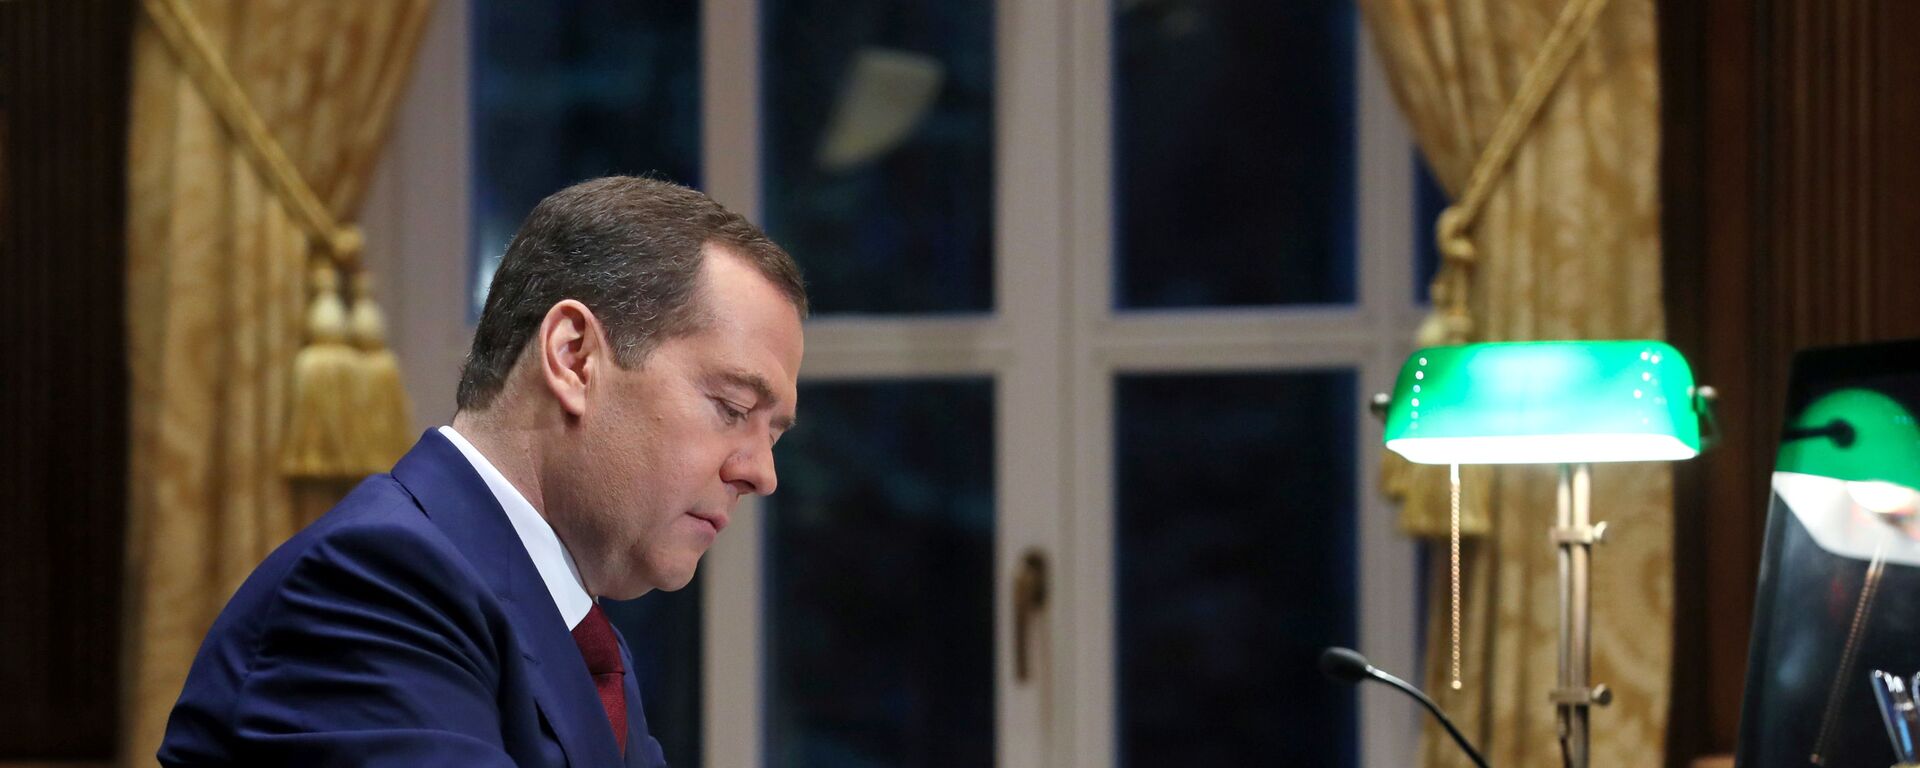 Председатель правительства РФ Дмитрий Медведев в рабочем кабинете в подмосковной  резиденции Горки. - Sputnik Արմենիա, 1920, 23.04.2021